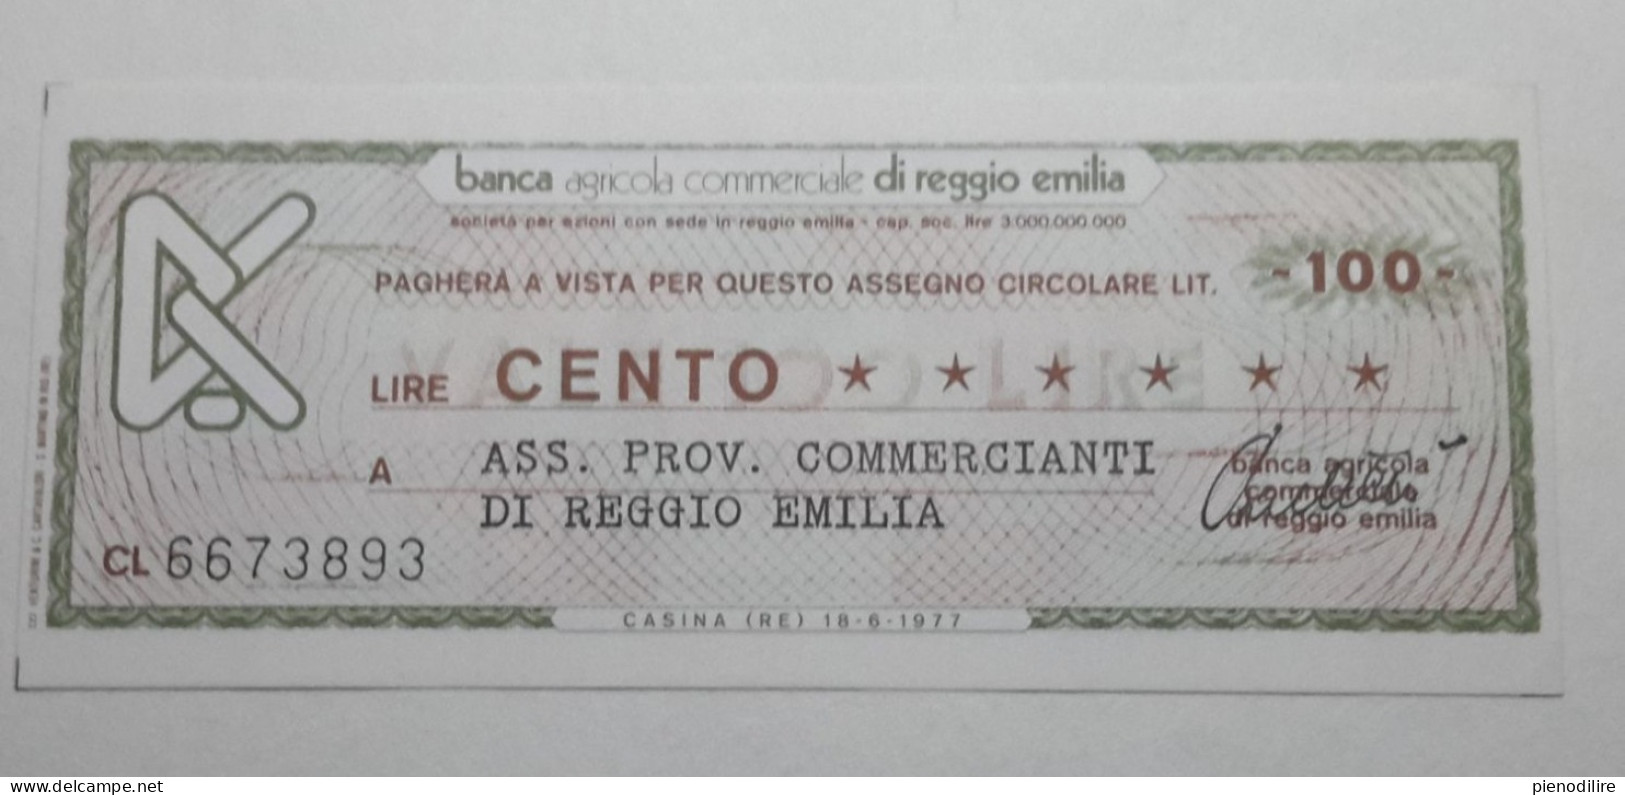 100 LIRE 18.6.1977 BANCA AGRICOLA COMMERCIALE REGGIO EMILIA (A.44) - [10] Cheques En Mini-cheques